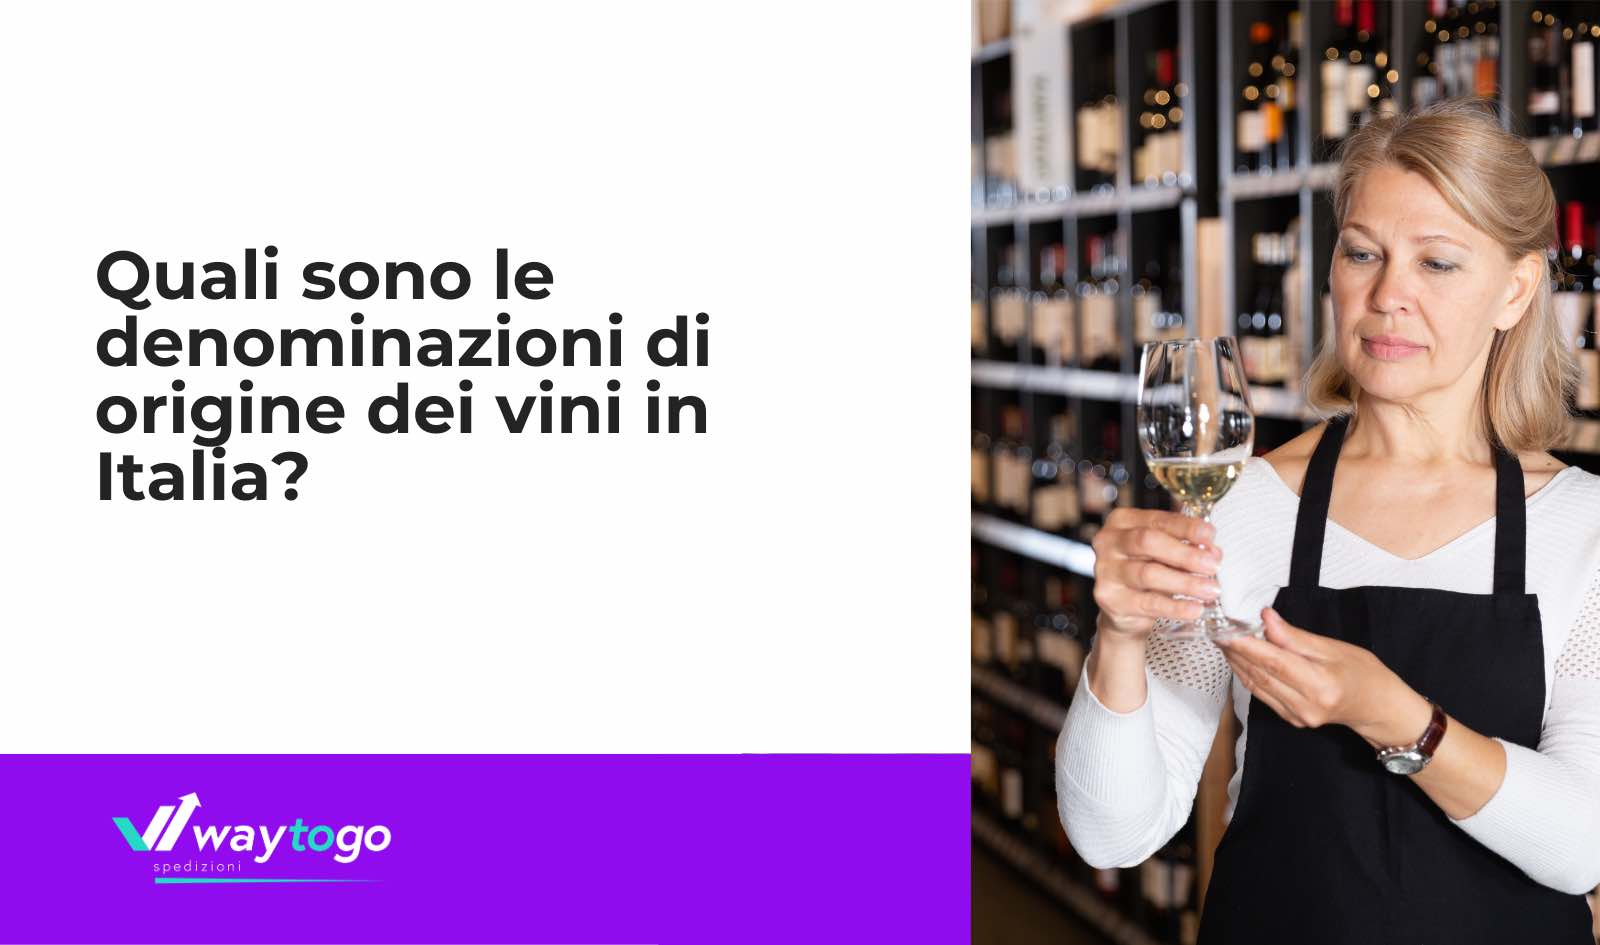 Le denominazioni di origine dei vini italiani?